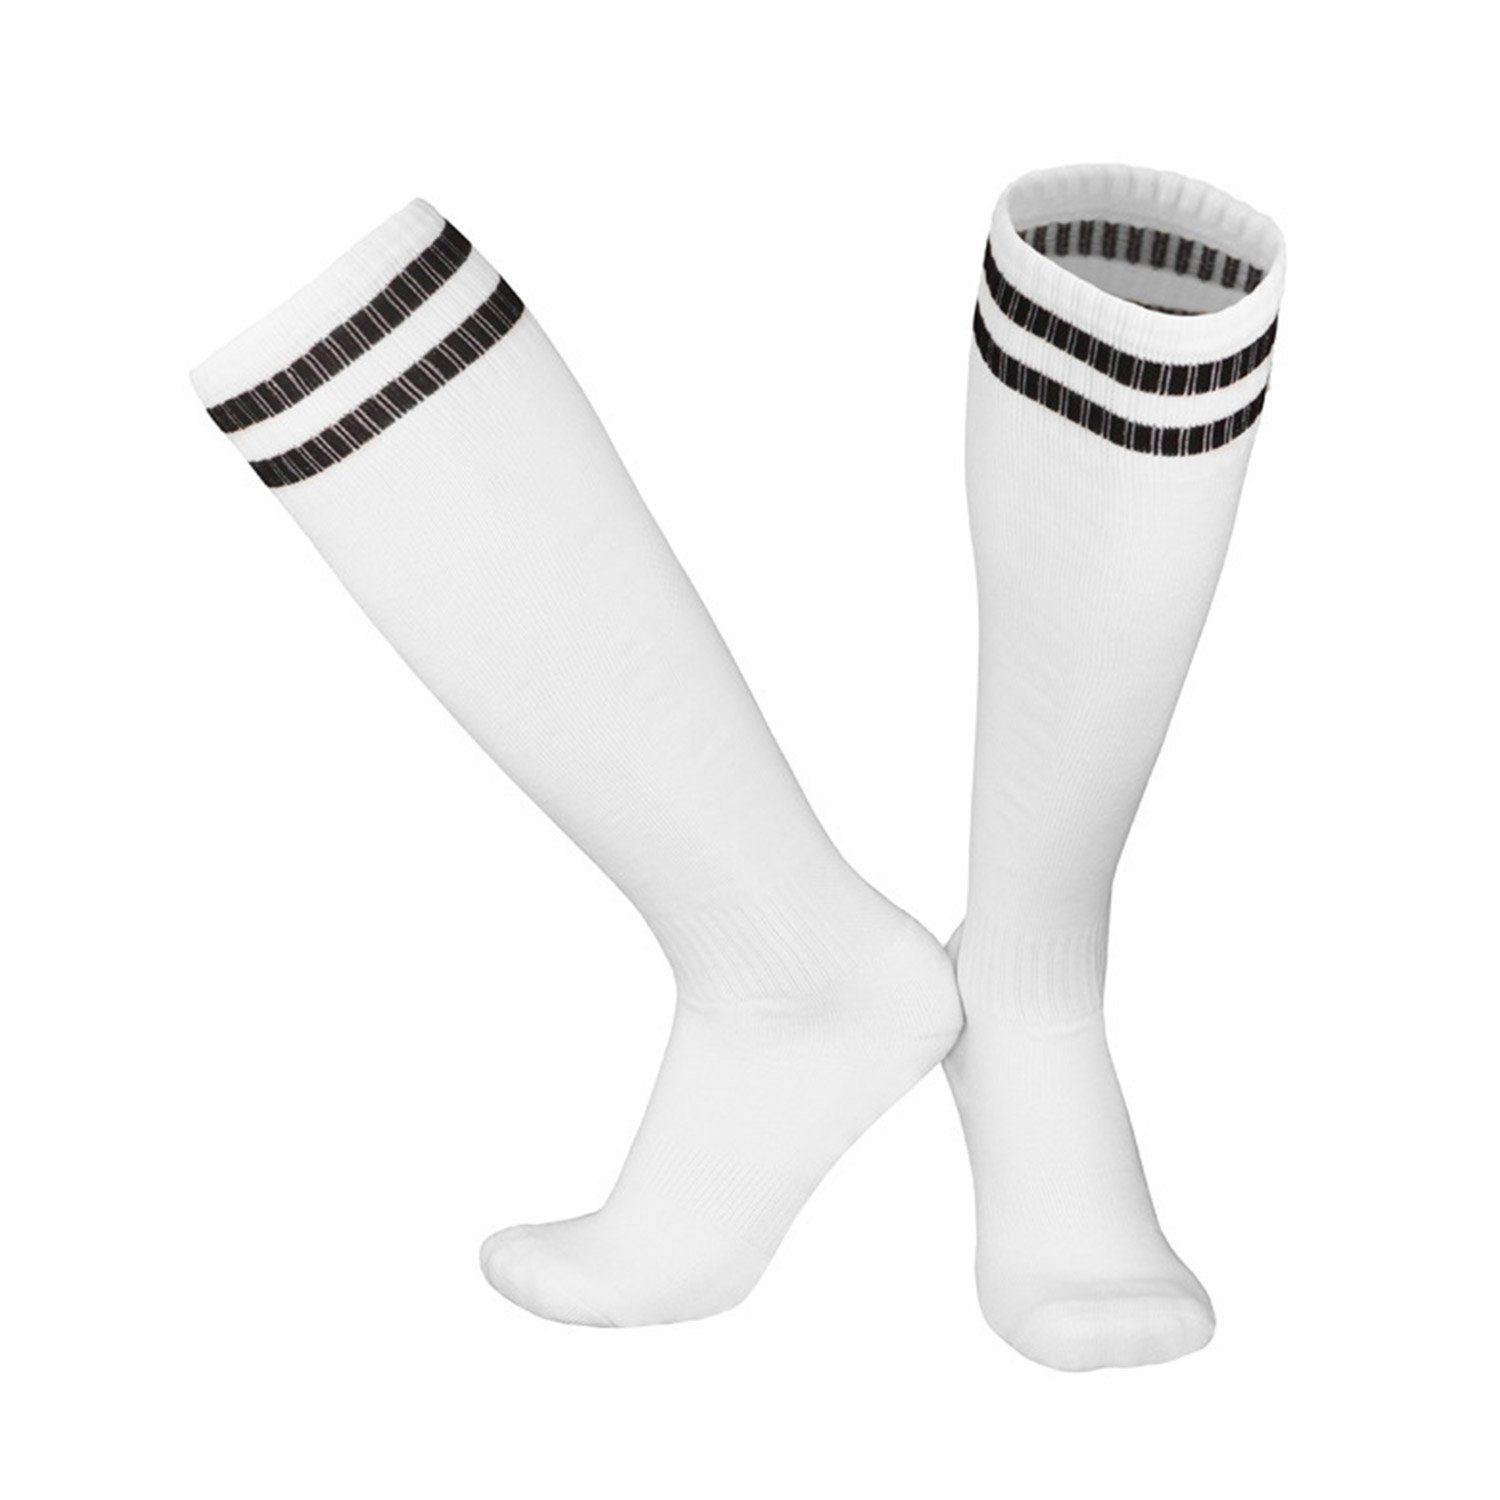 MAGICSHE Sportsocken Kinderfußball -Socken für Erwachsene Fadenfäden Socken Neutral Training Socken Fußballtraining, Laufen und Bewegung Weiß1